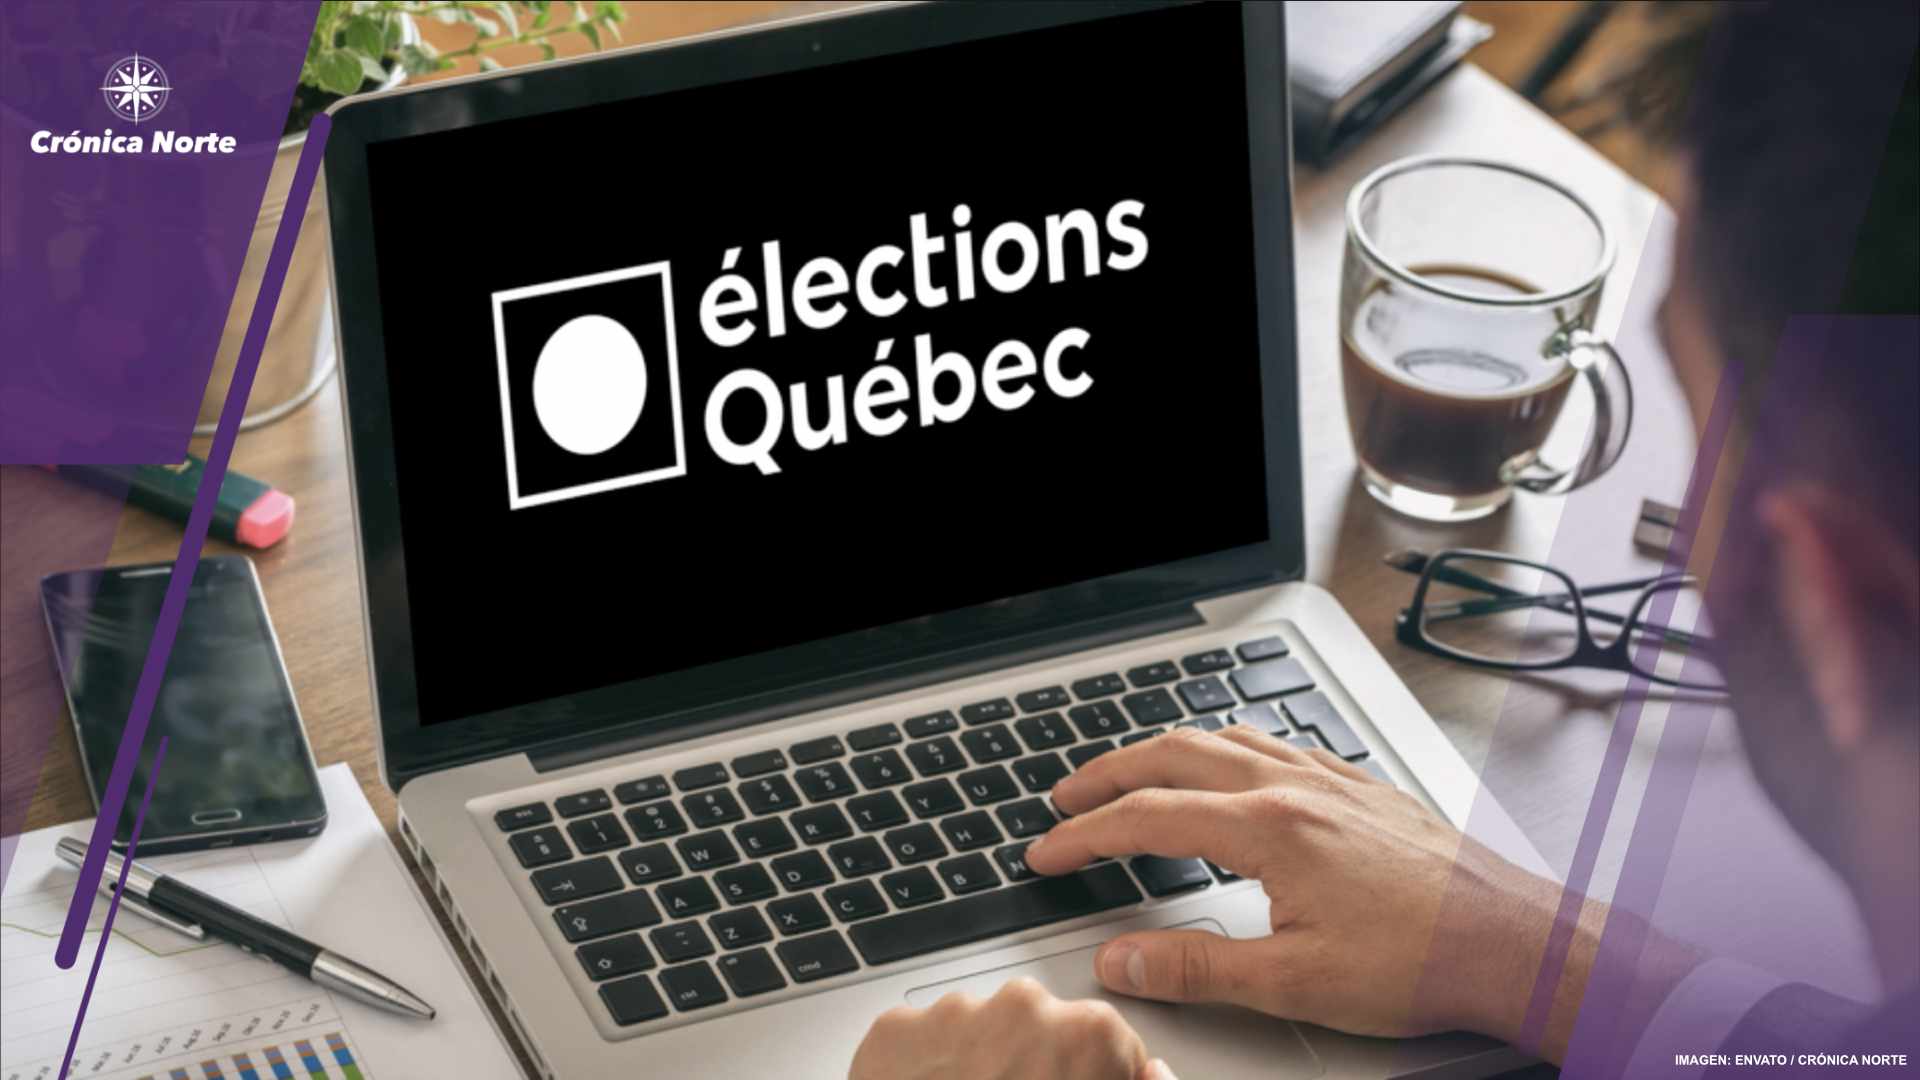 La ciudad de Montreal interesada en el voto por internet